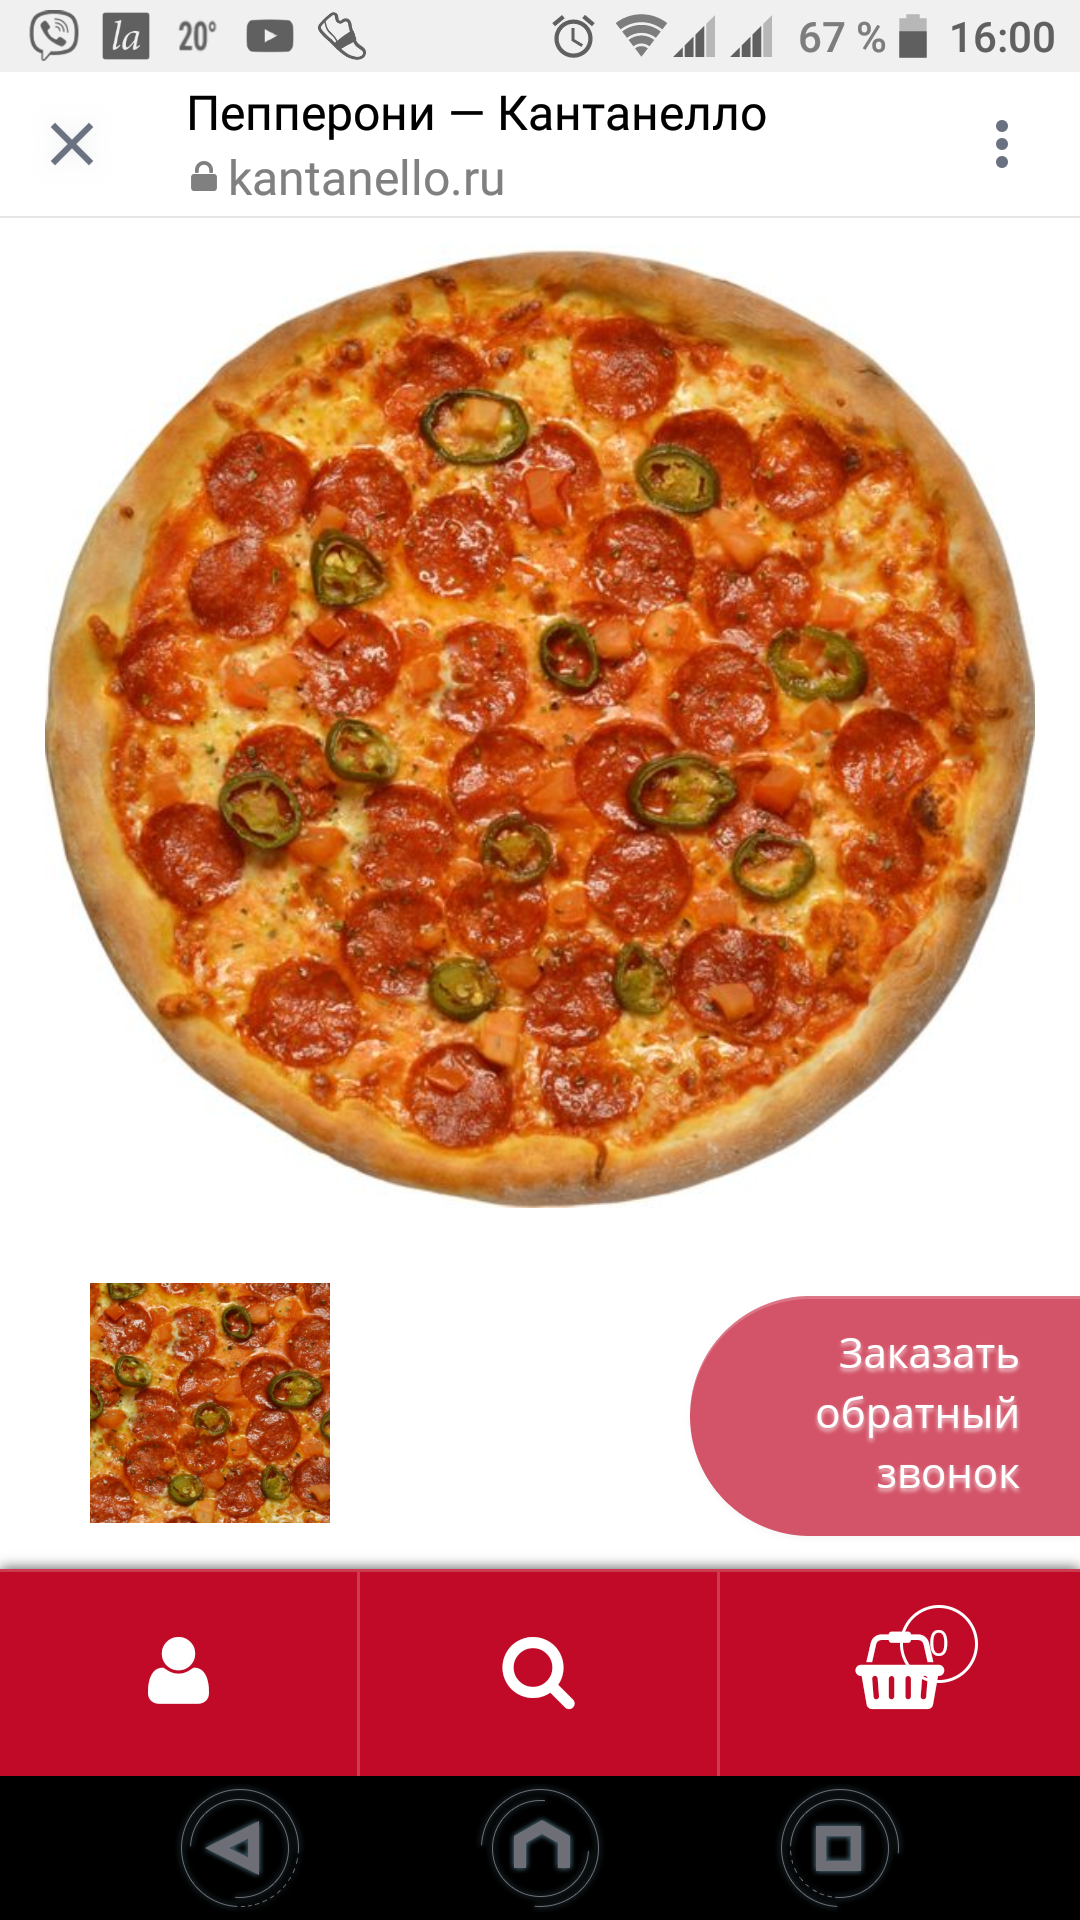 лучшая доставка пиццы омск фото 65